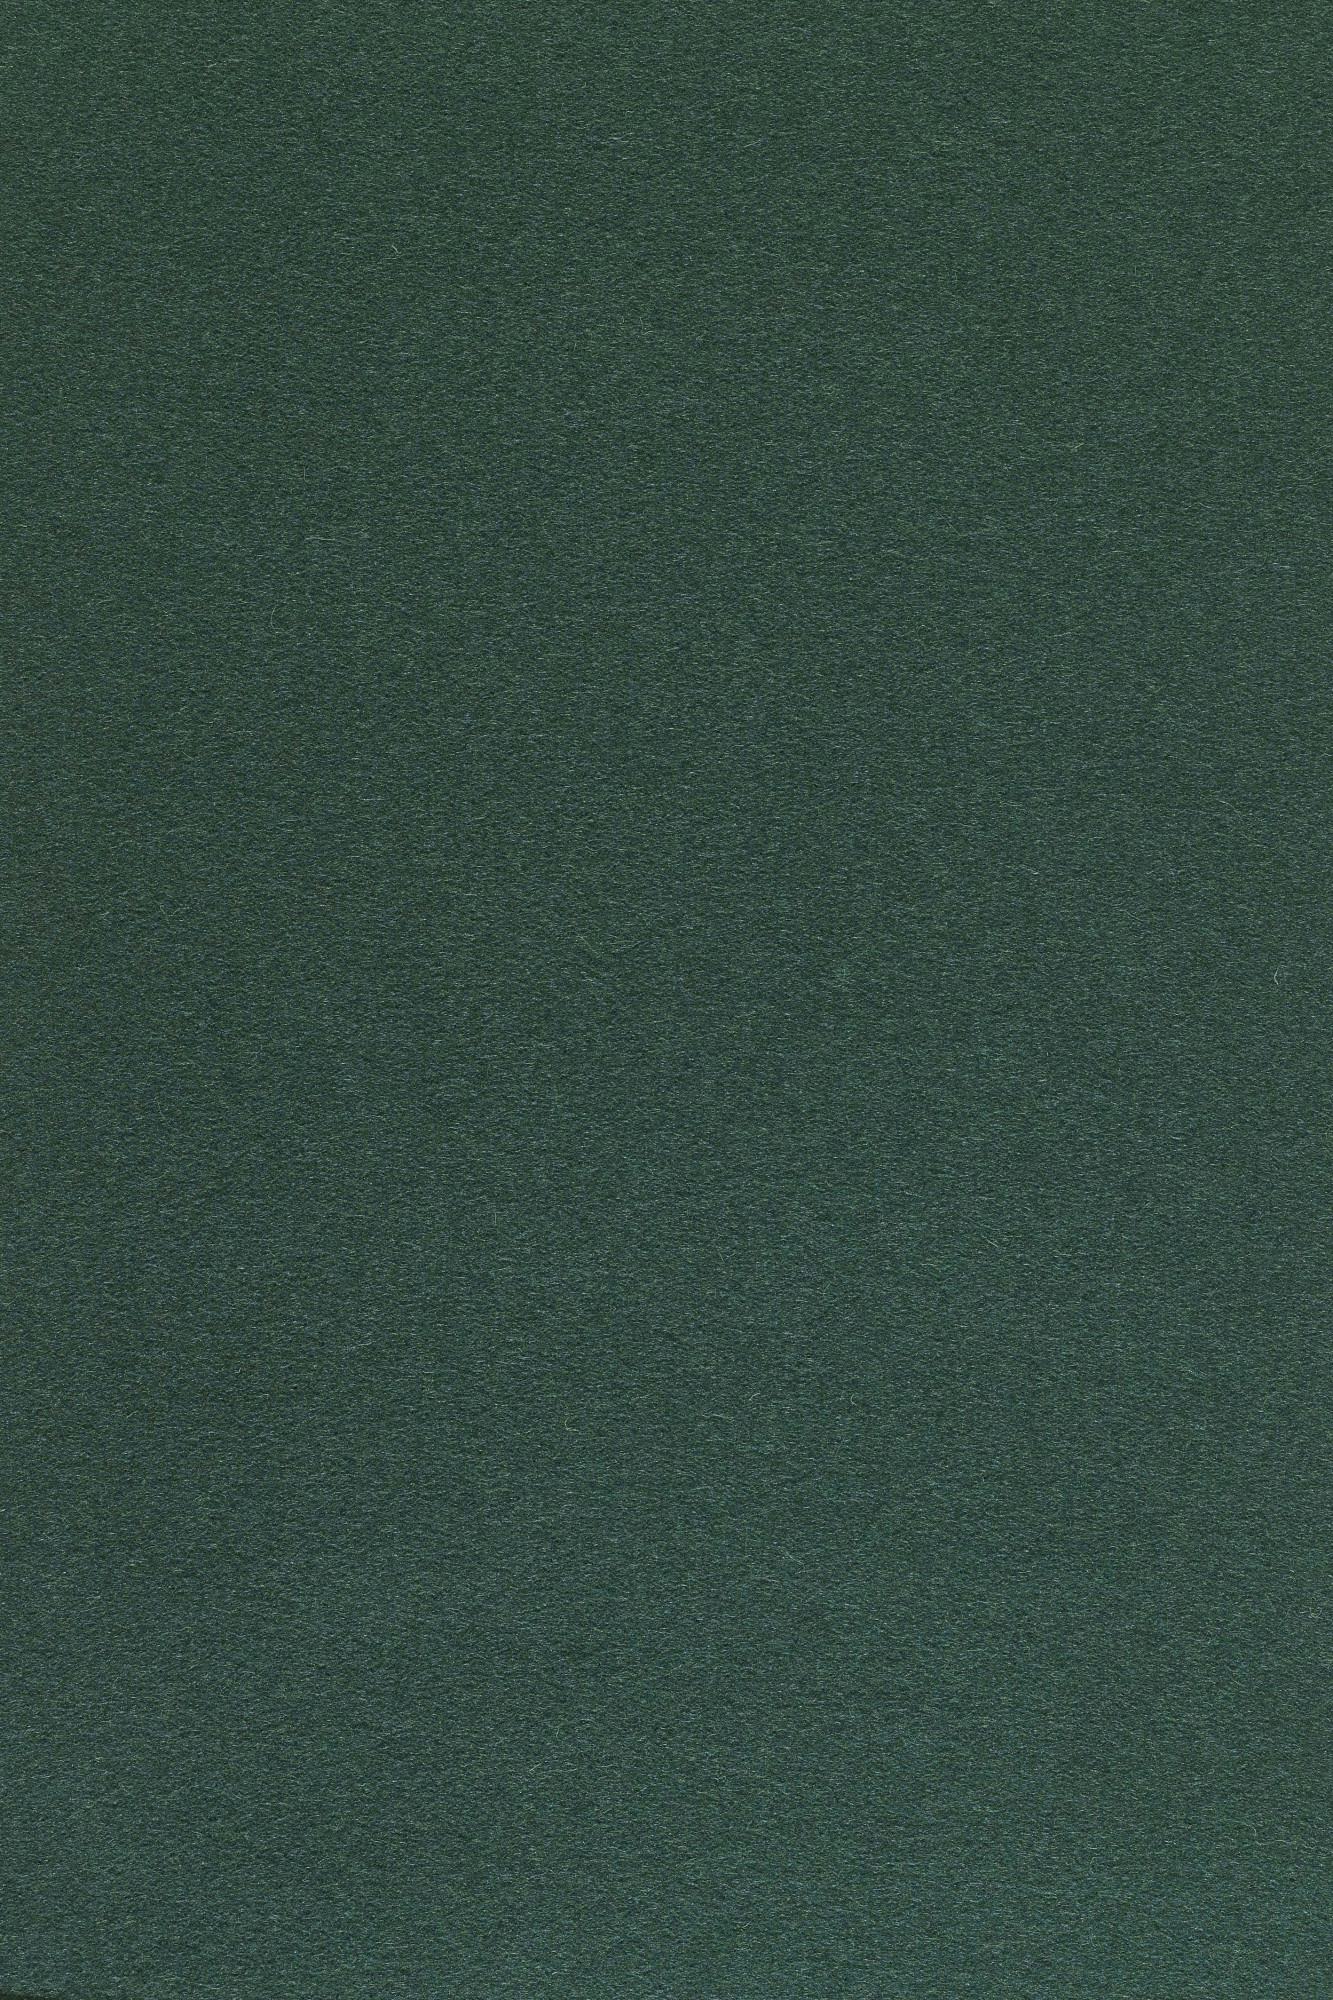 Fabric sample Divina 3 886 green